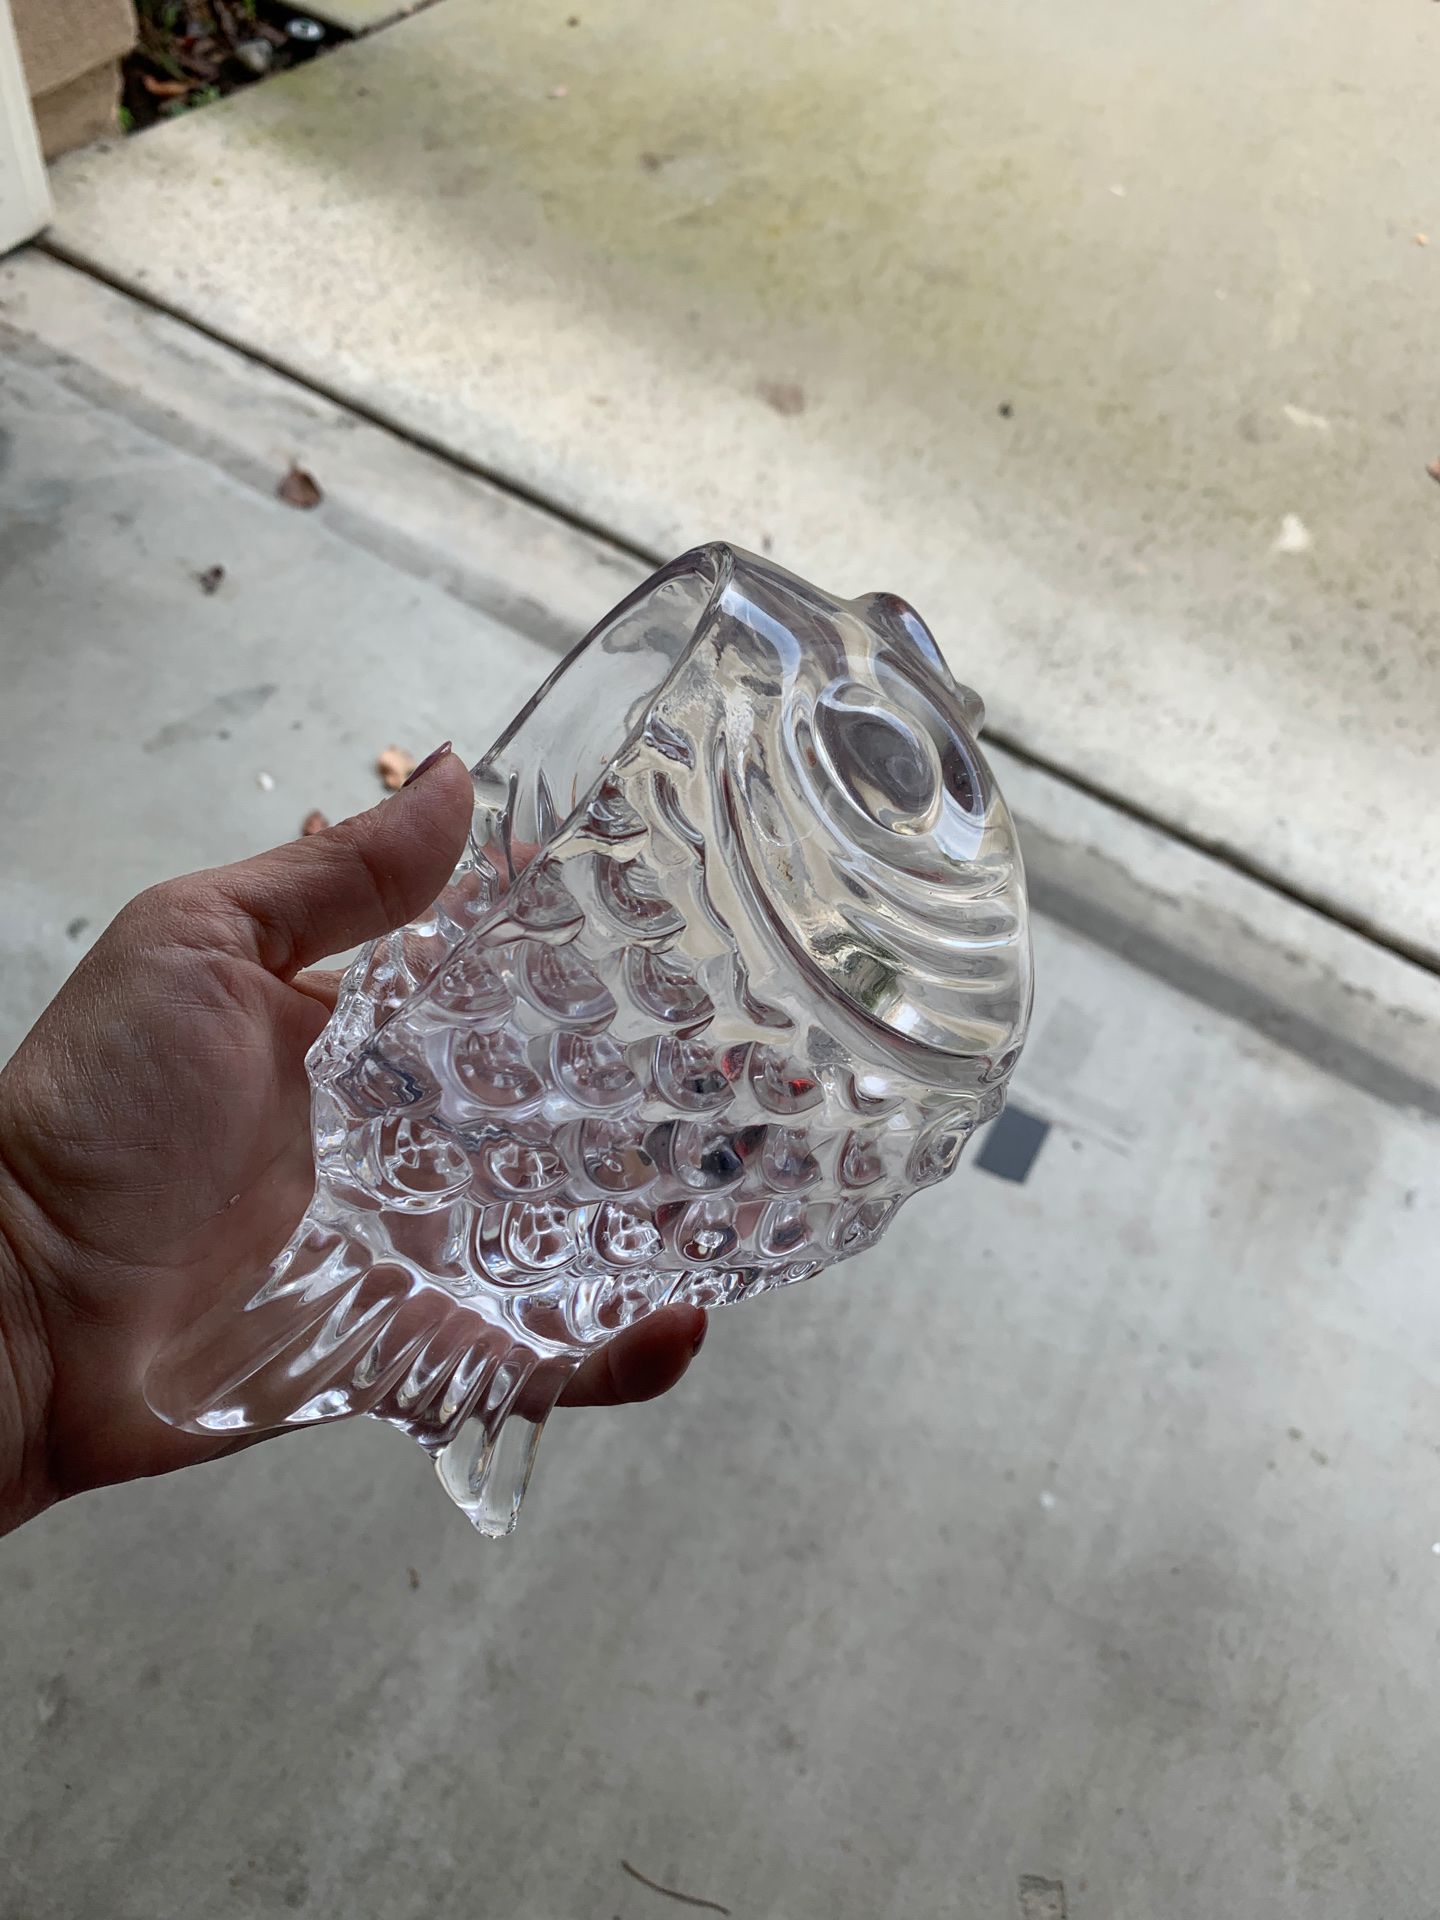 Beautiful glass bowl shape like a fish